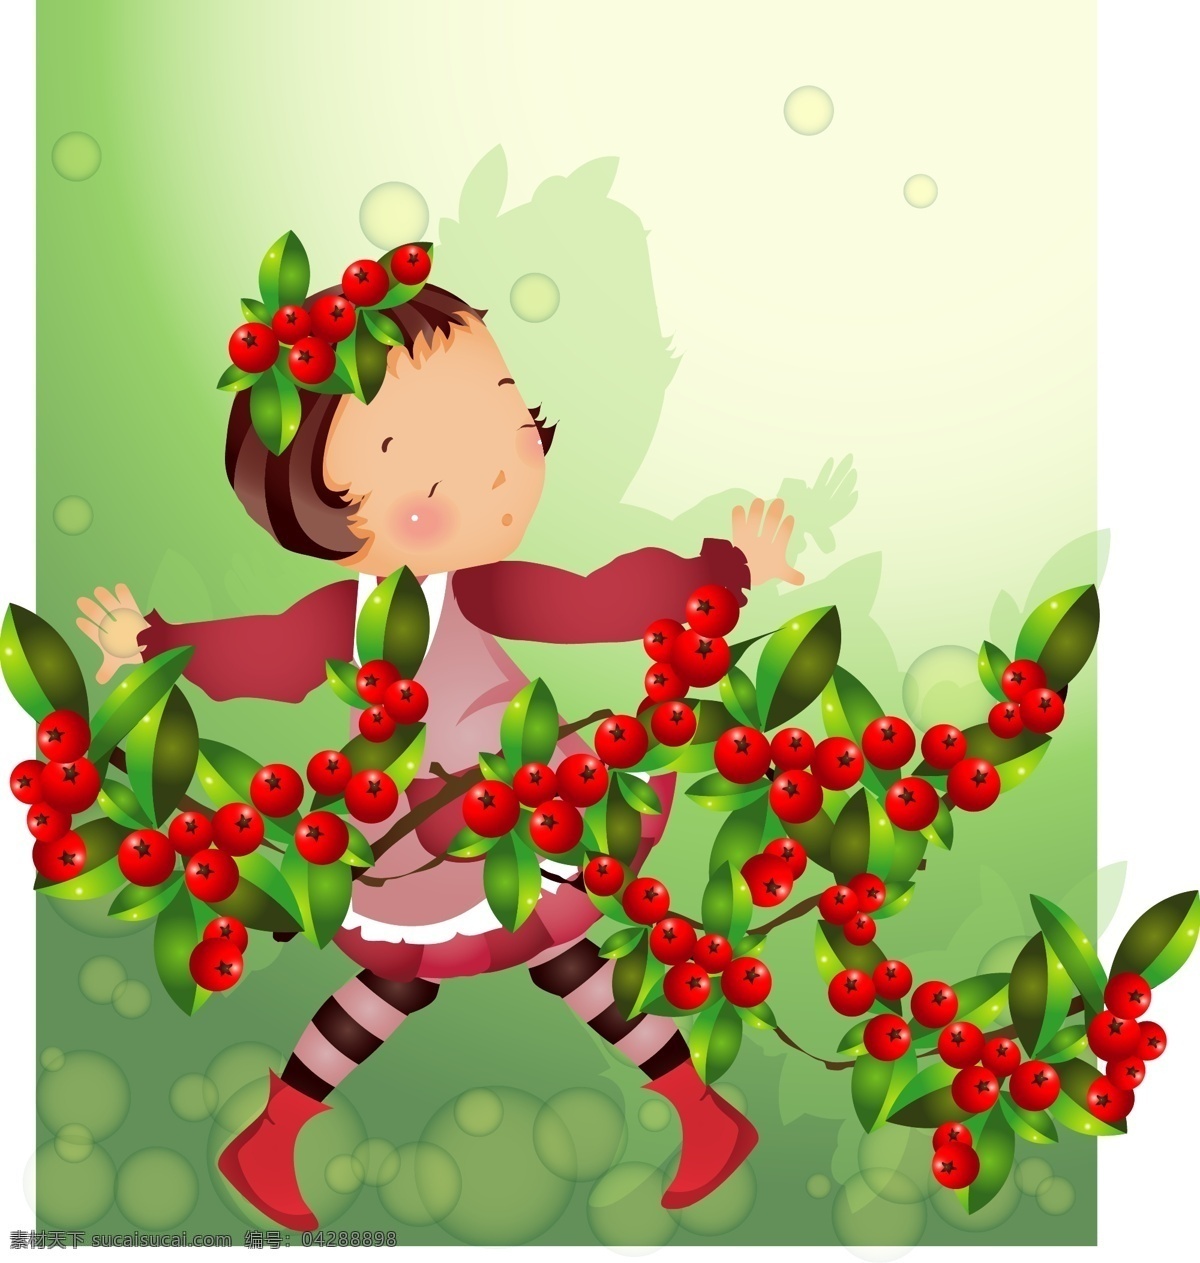 红色 水果 主题 iclickart 四 赛季 韩国 可爱 女孩 相册 韩国矢量素材 秋天 向日葵 叶 物质 载体 矢量图 矢量人物